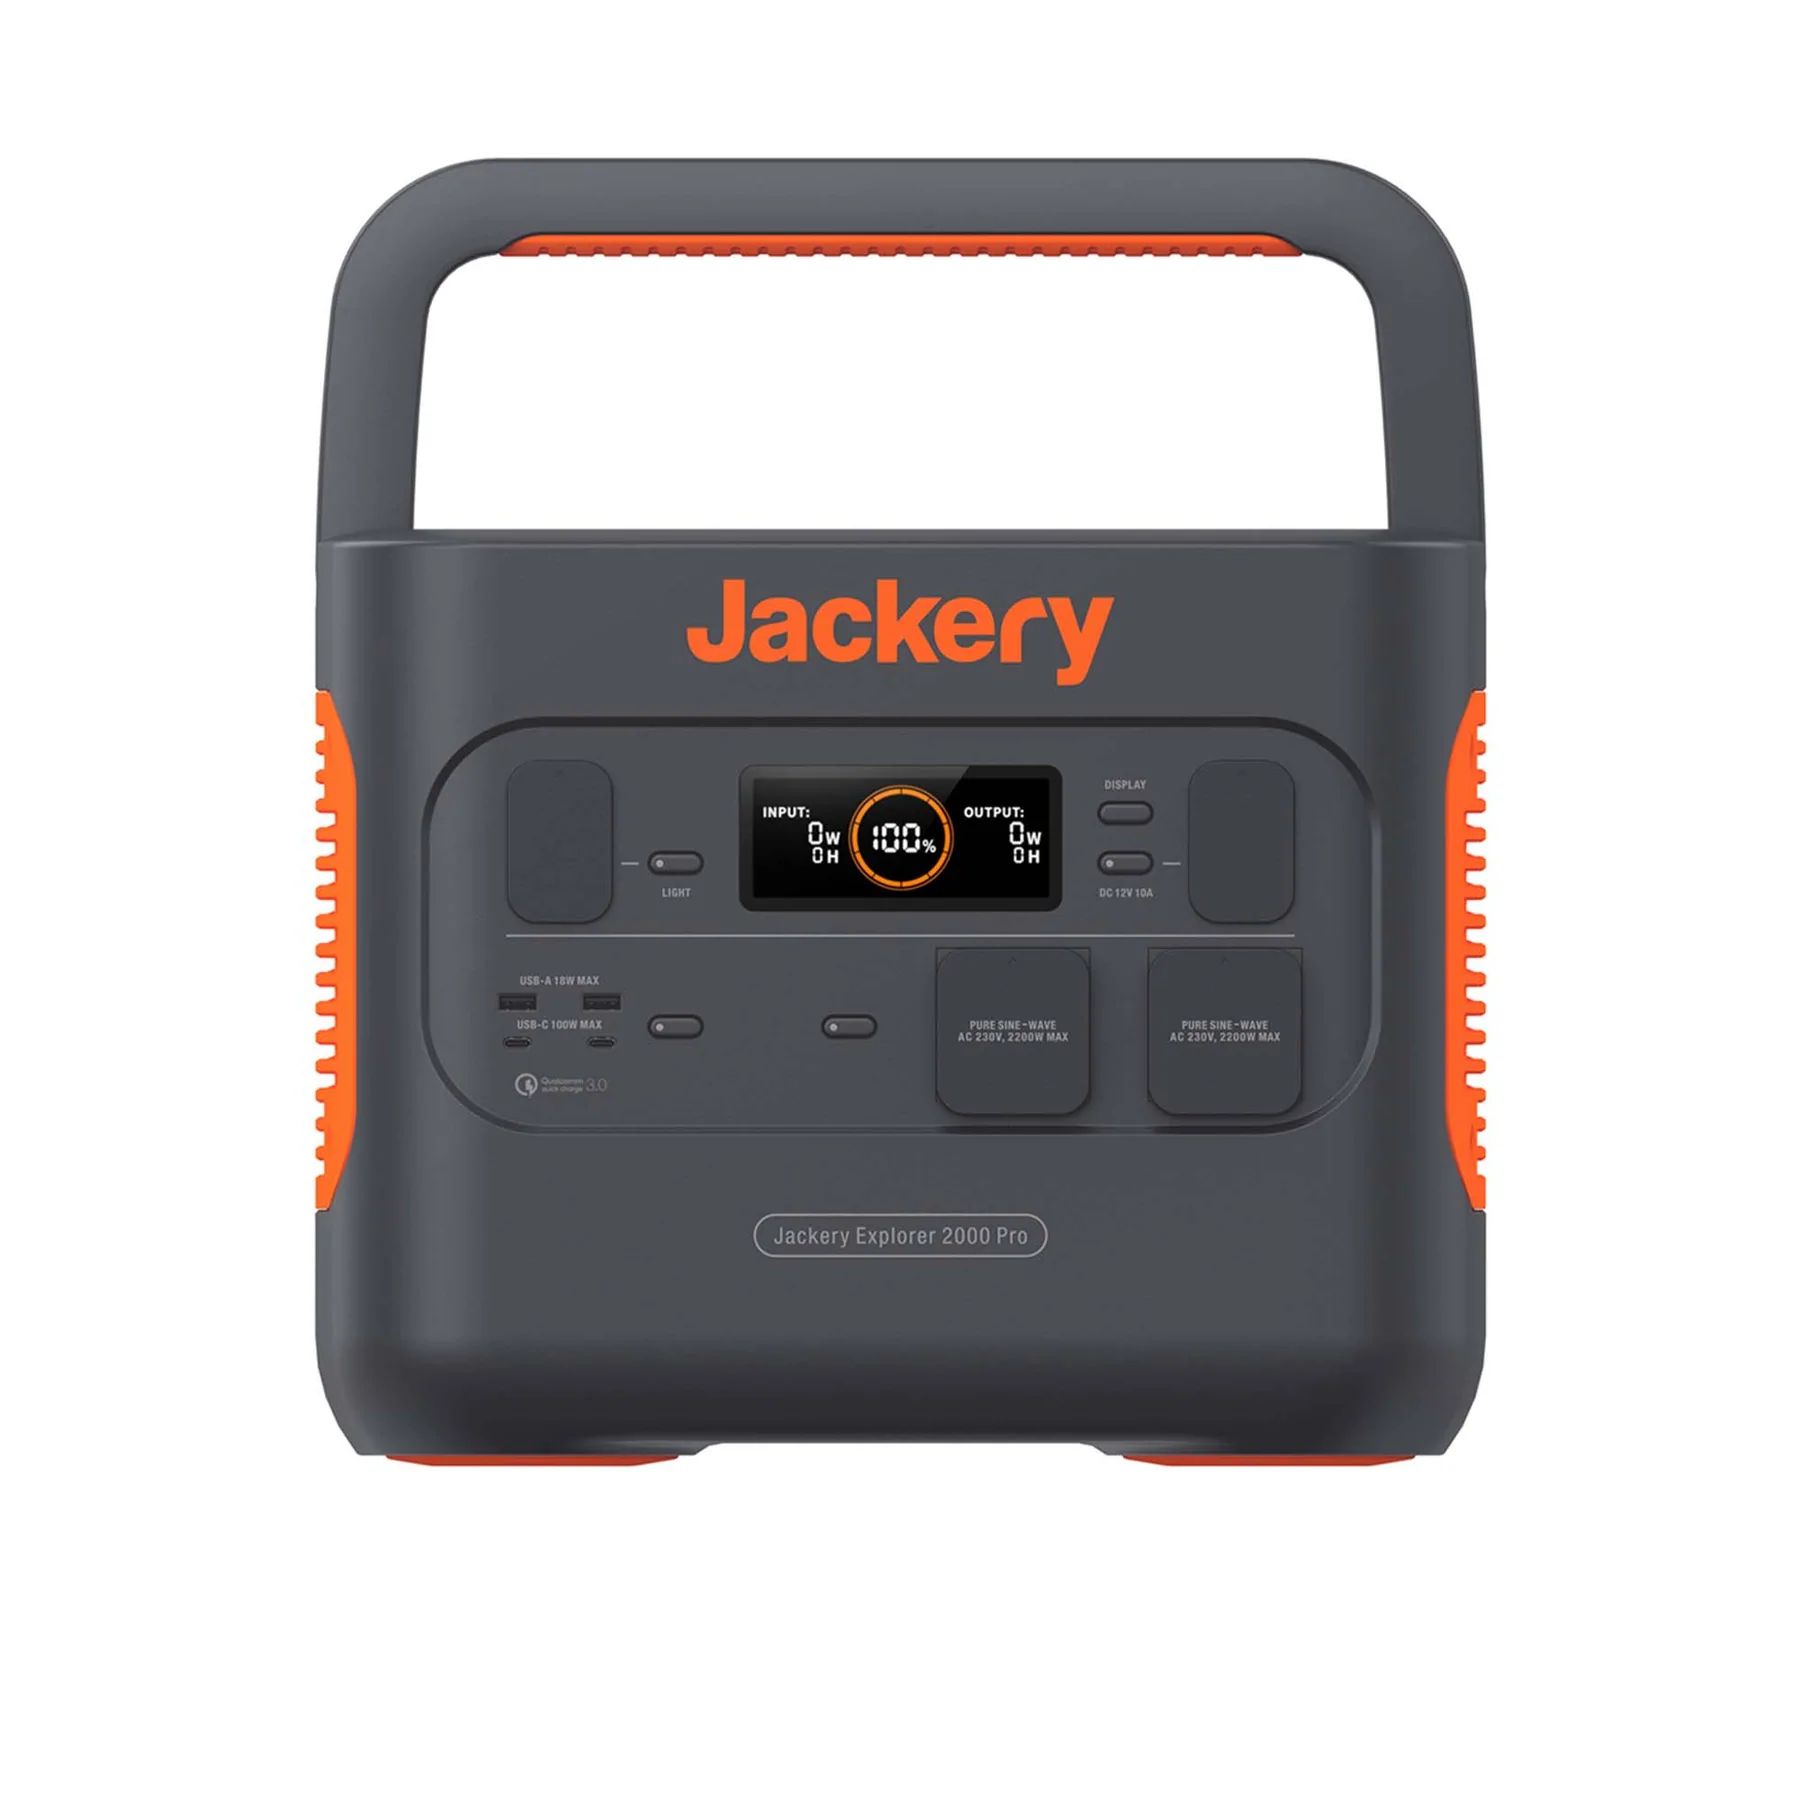 Jackery Explorer 2000 Pro Test